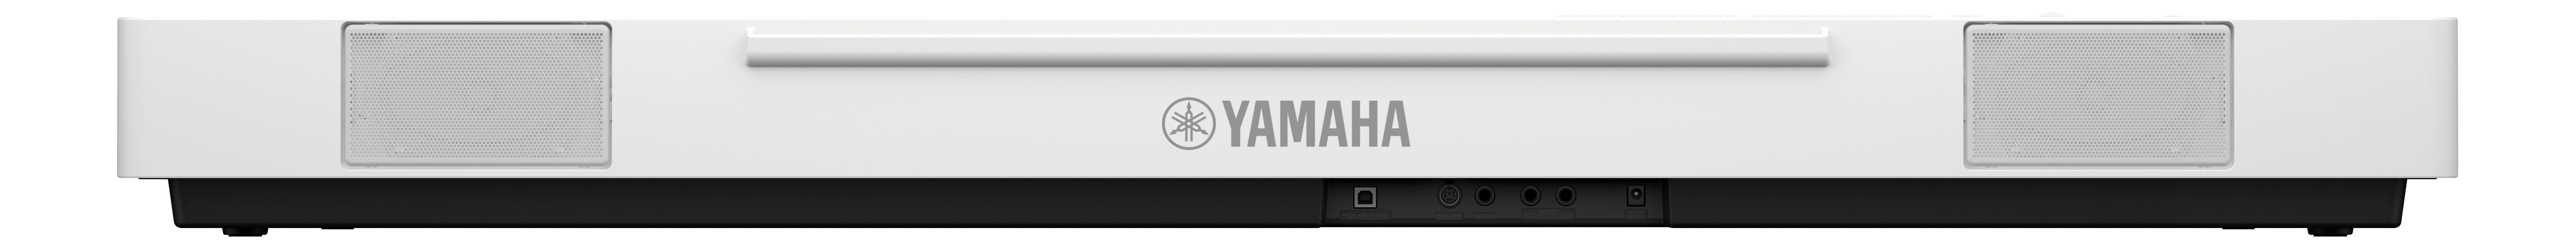 Yamaha P-225 White - Piano digital portatil - Variation 1